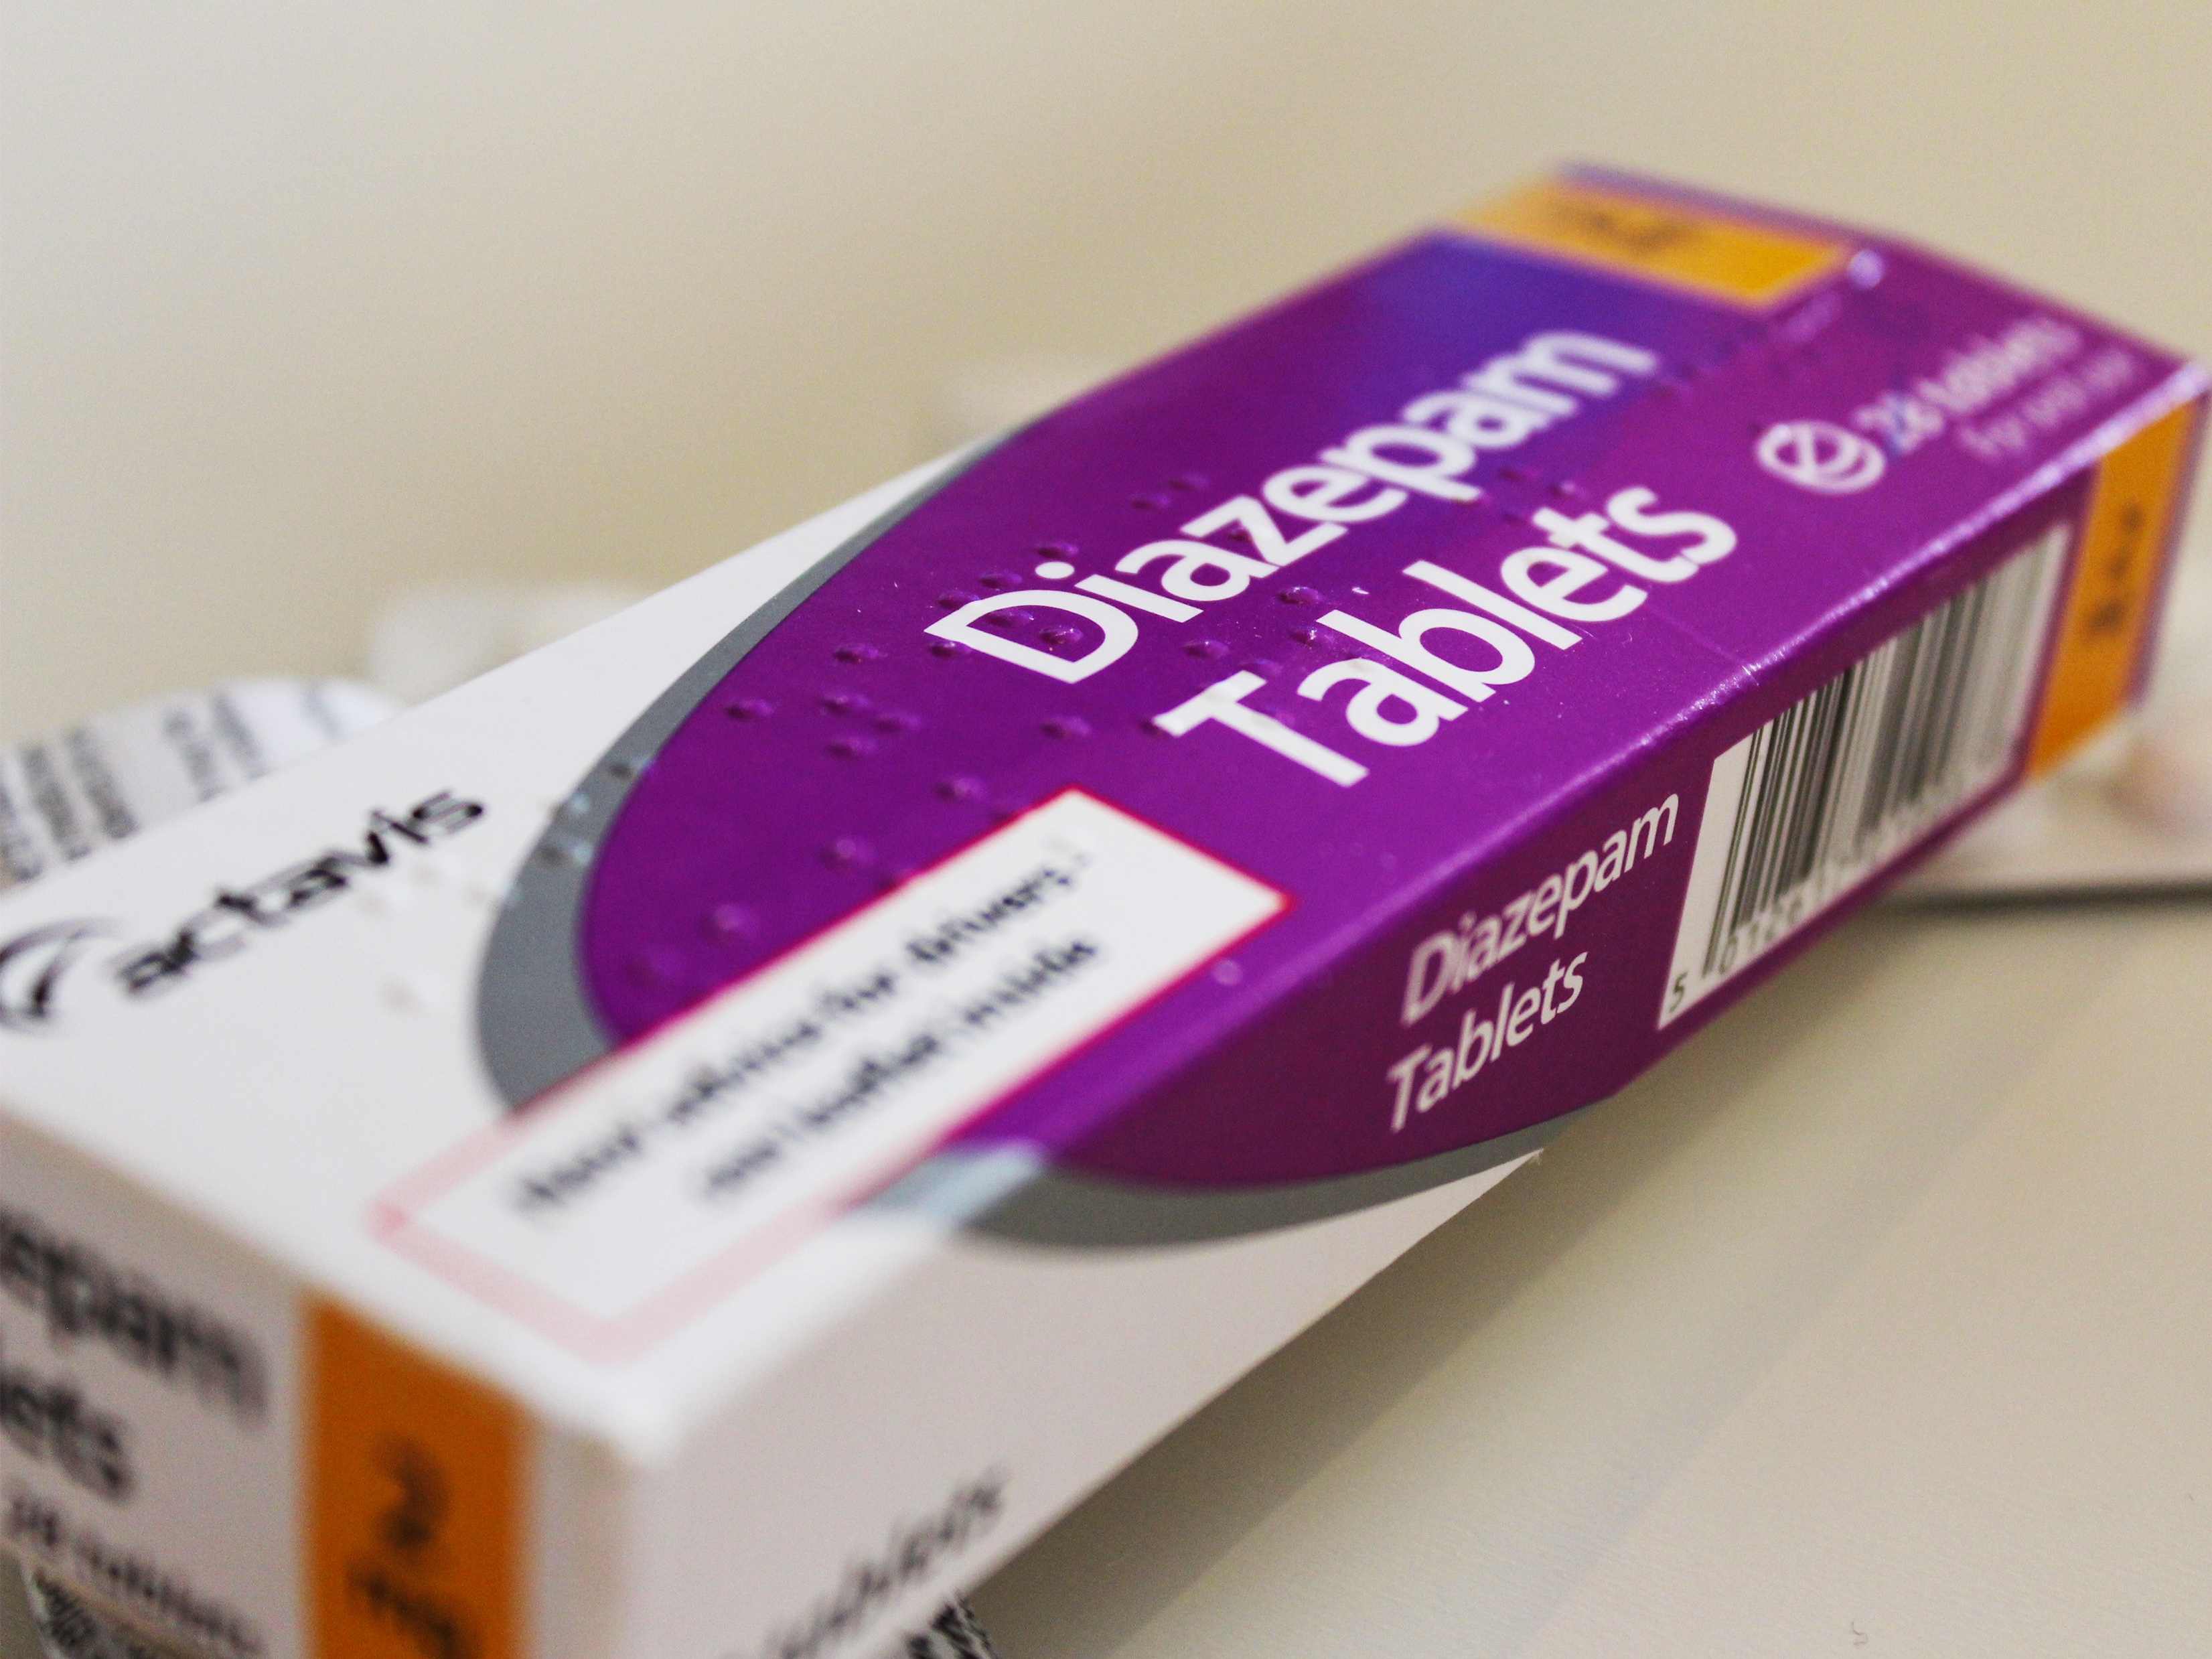 Pack of Diazepam